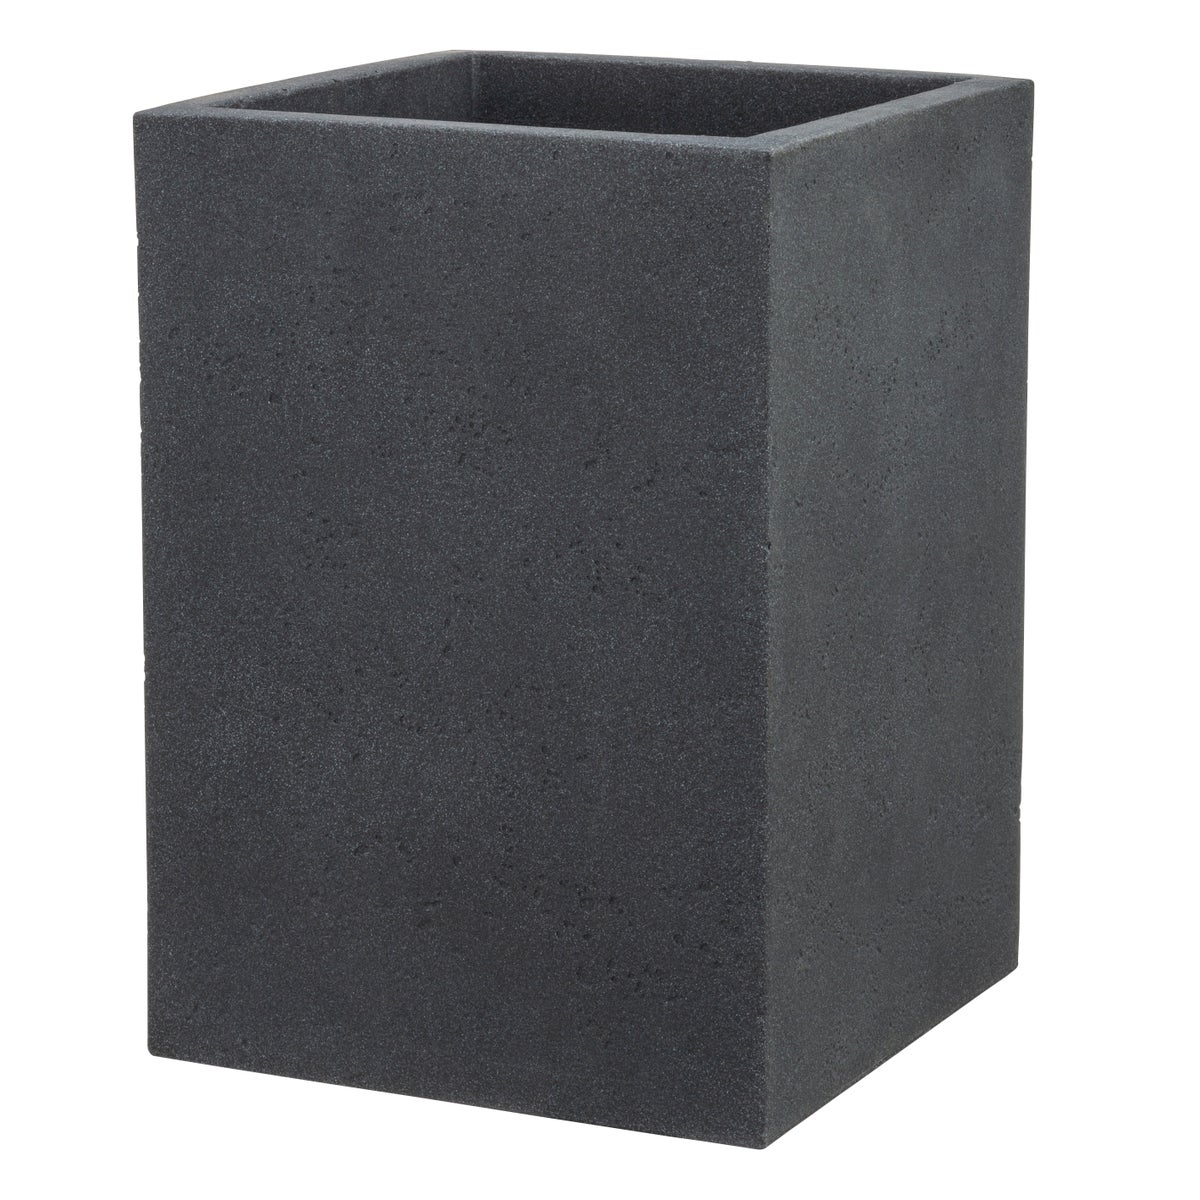 Scheurich C-Cube High 54, Hochgefäß/Blumentopf/Pflanzkübel, quadratisch,  aus Kunststoff Farbe: Stony Black, 38 cm Durchmesser, 53,7 cm hoch, 26 l Vol.